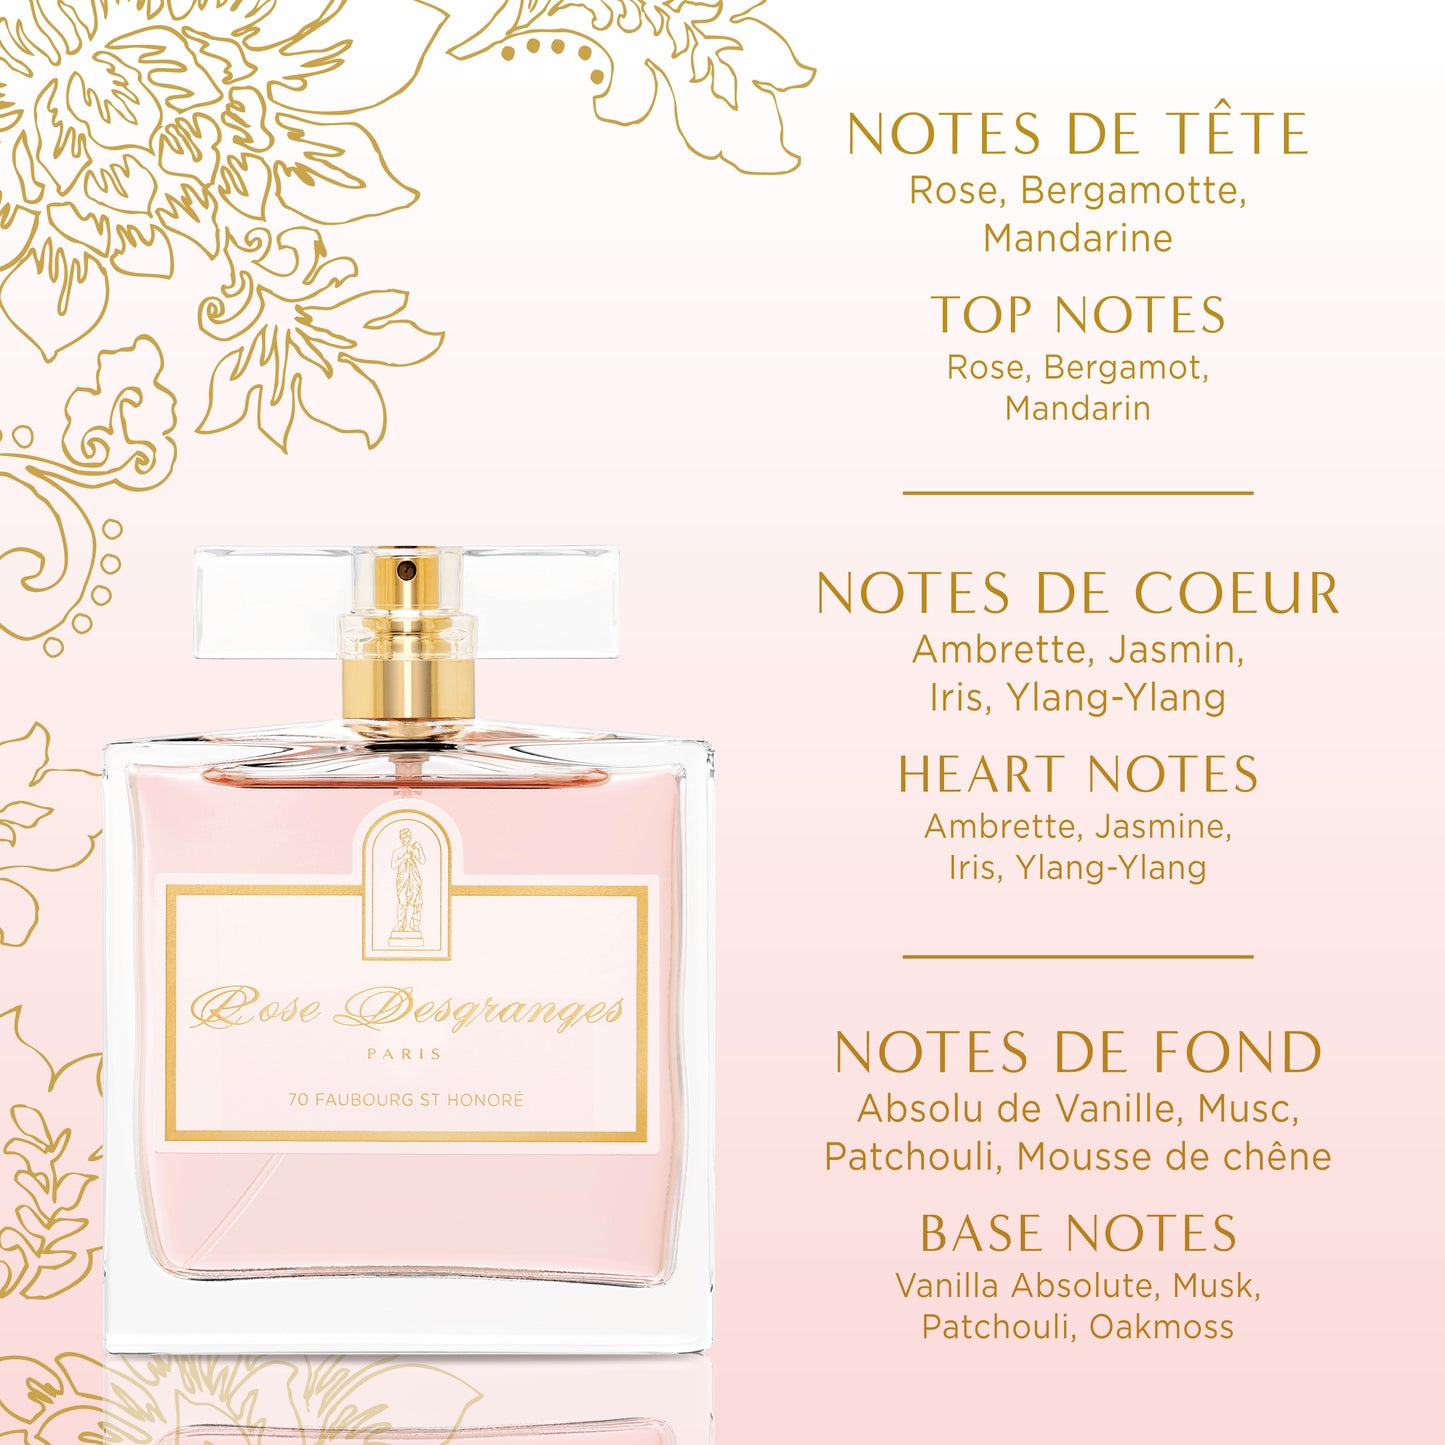 Rose Desgranges Eau de Parfum 50 ml